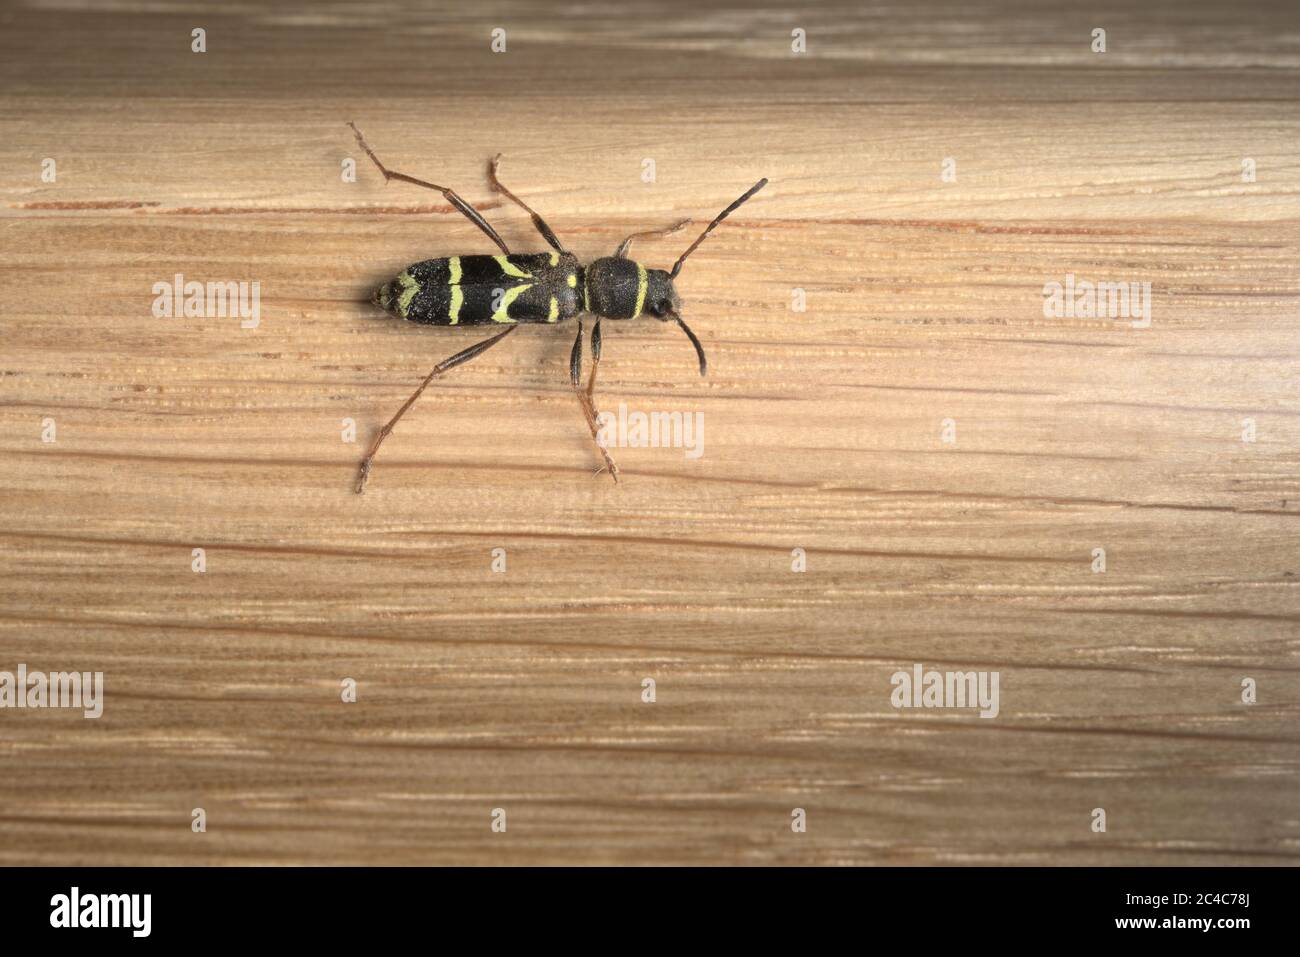 Motif saisissant et reconnaissable à l'arrière d'un scarabée de guêpe sur fond de chêne. Utile pour l'identification, plus grande profondeur de champ. Banque D'Images